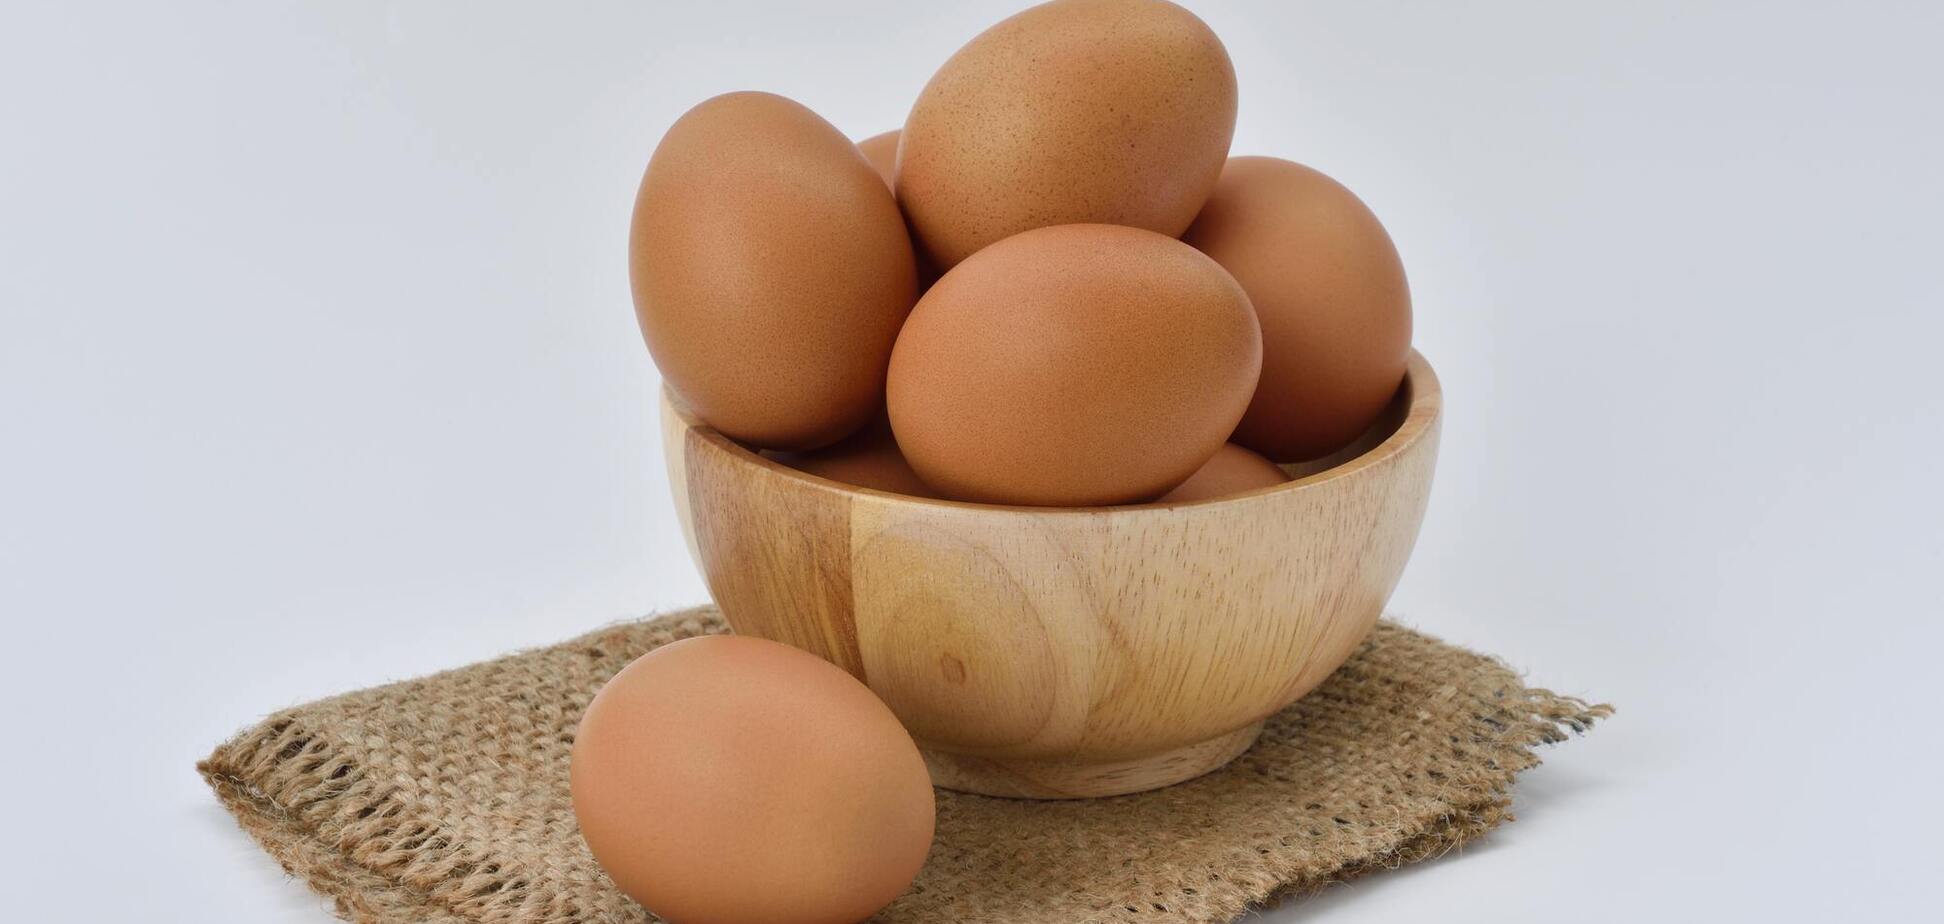 Домашние яйца